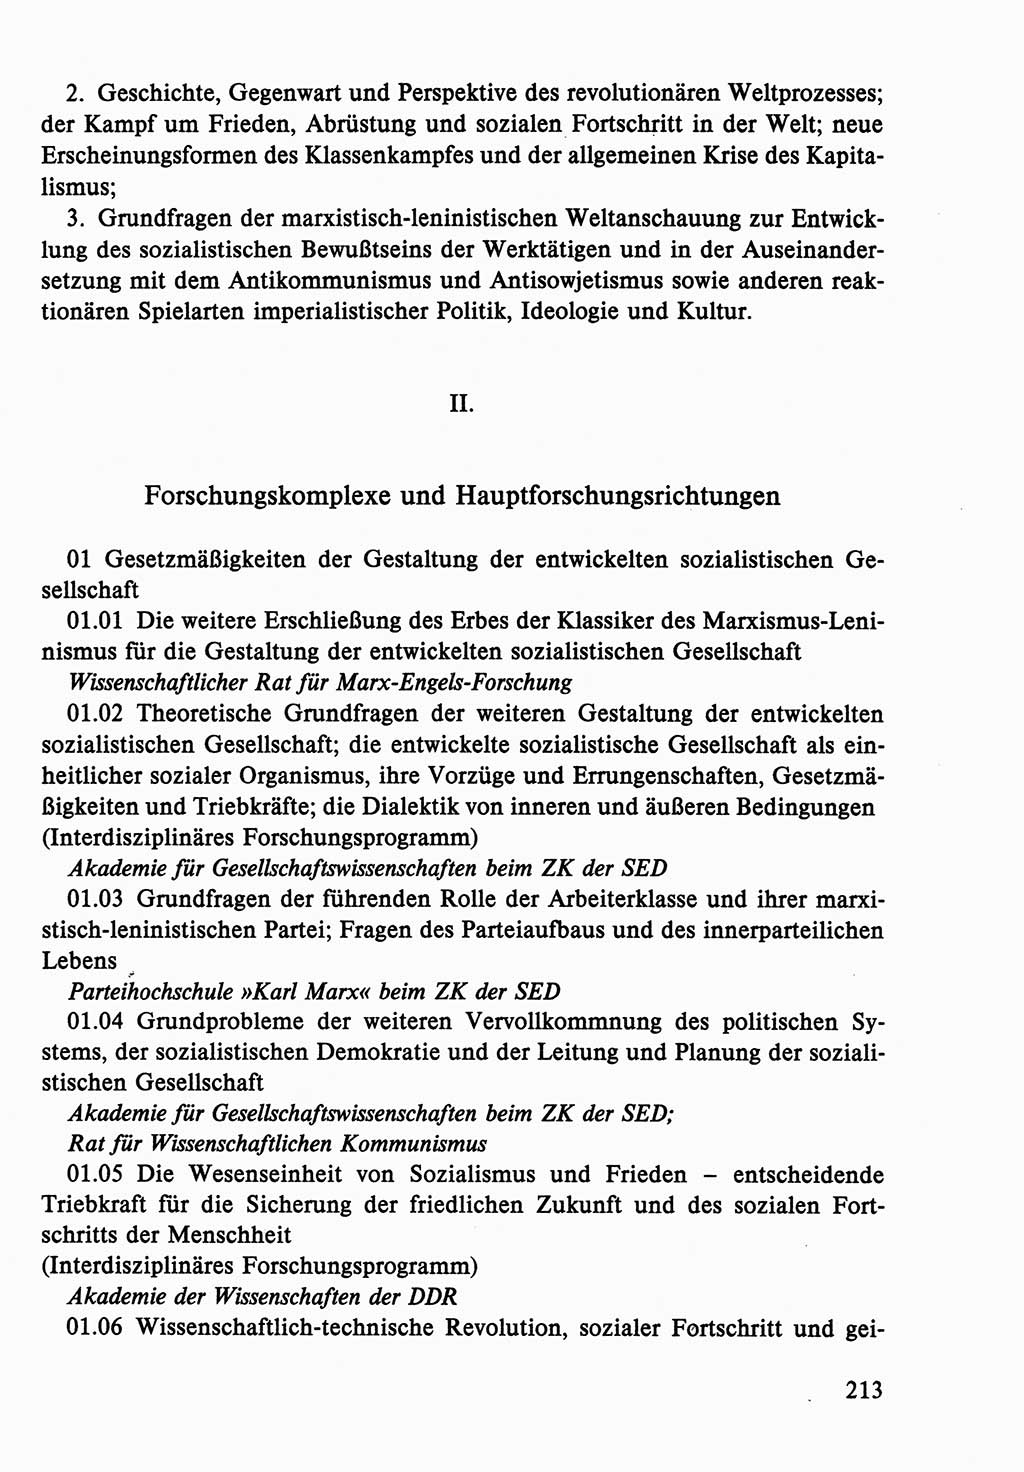 Dokumente der Sozialistischen Einheitspartei Deutschlands (SED) [Deutsche Demokratische Republik (DDR)] 1986-1987, Seite 213 (Dok. SED DDR 1986-1987, S. 213)